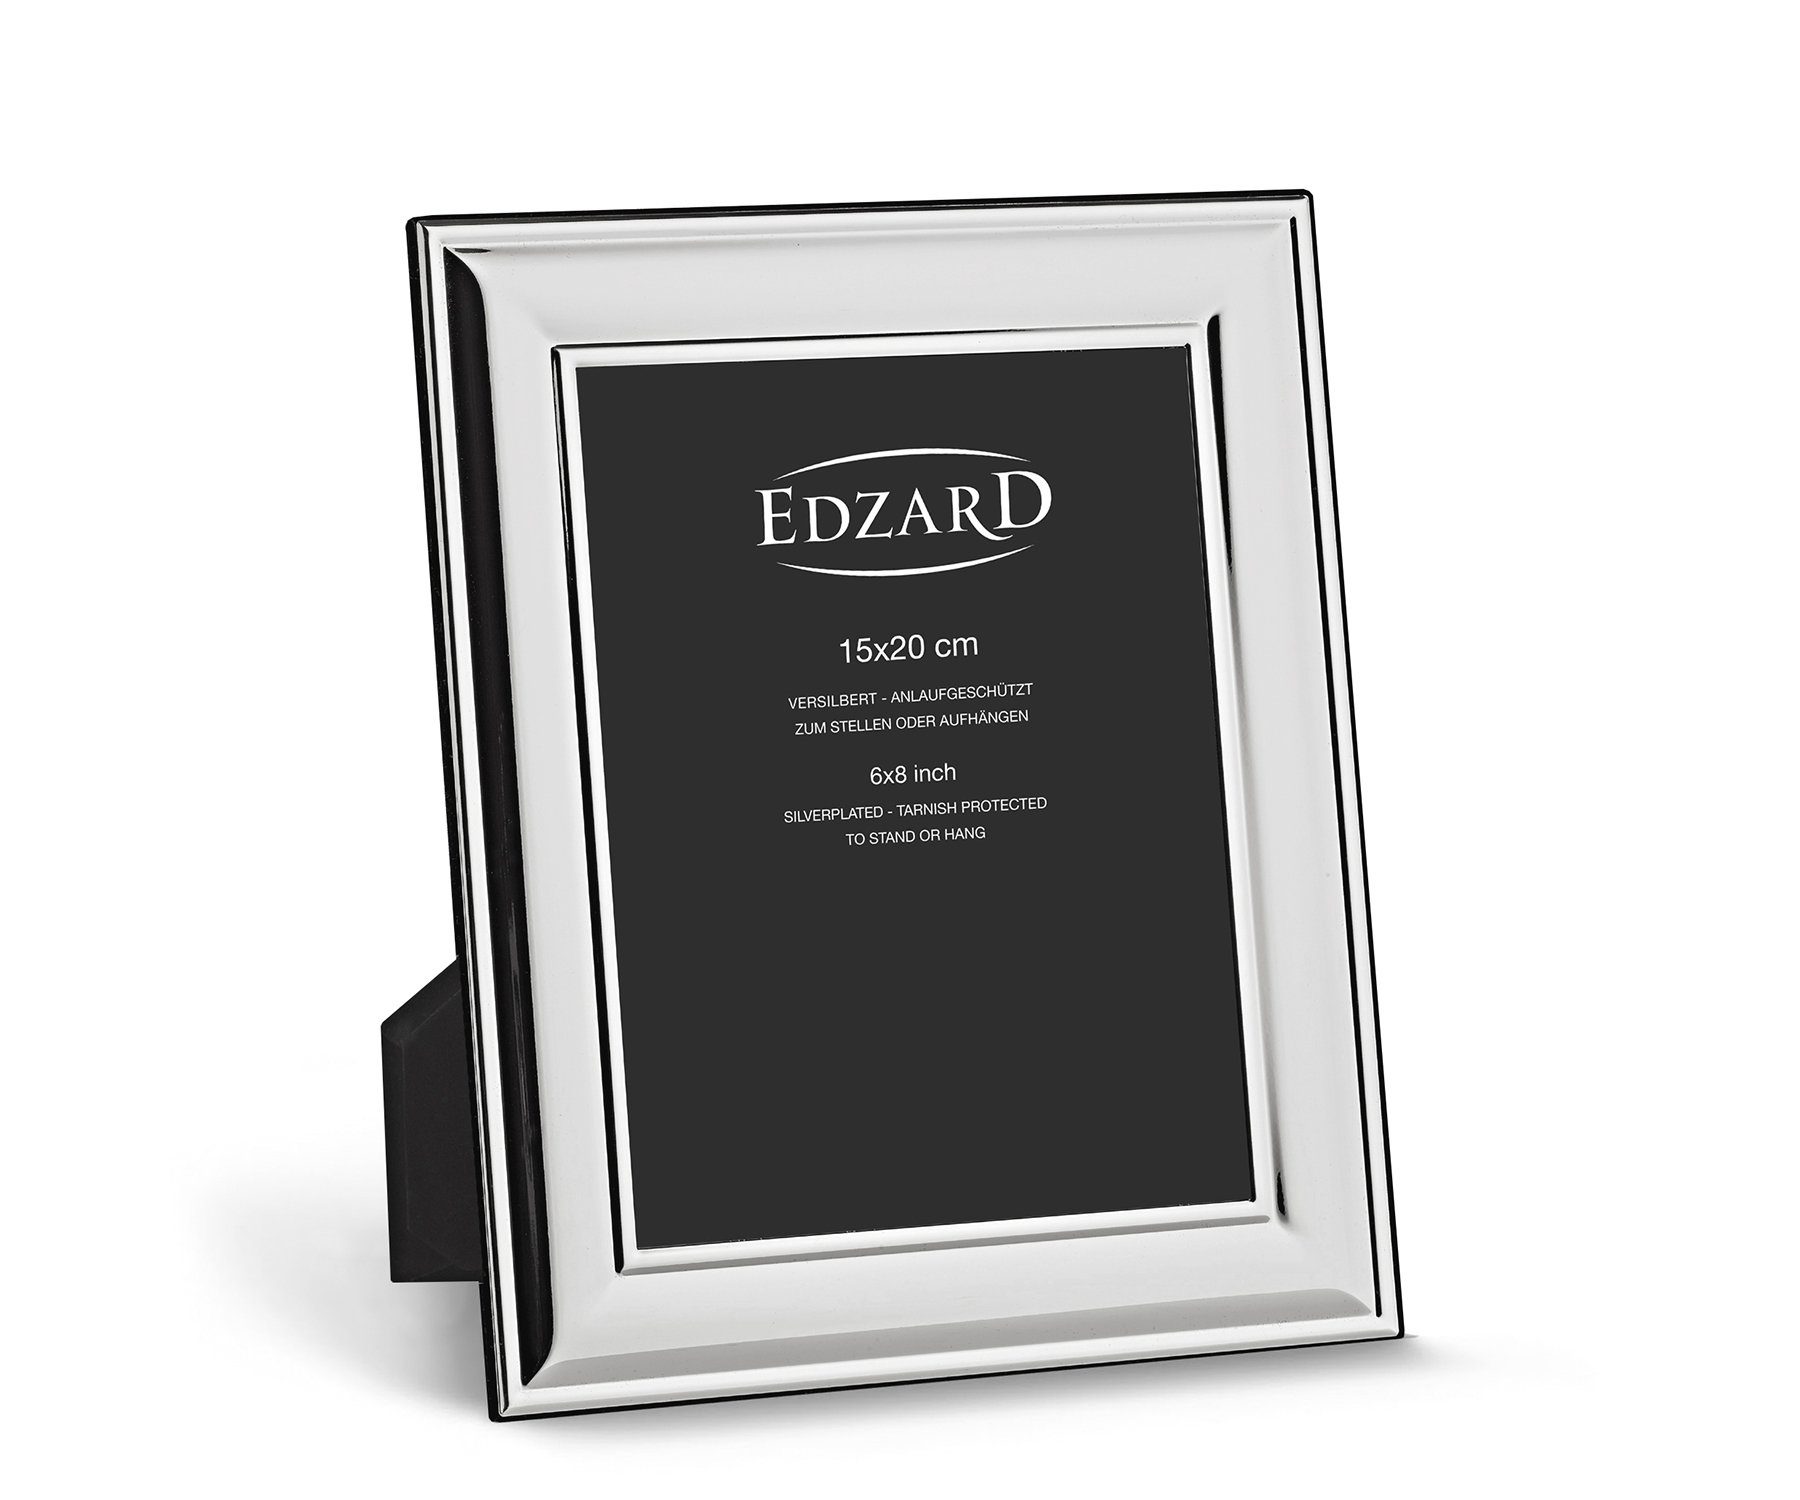 EDZARD Bilderrahmen Sunset, versilbert und anlaufgeschützt, für 15x20 cm Bilder - Fotorahmen | Einzelrahmen